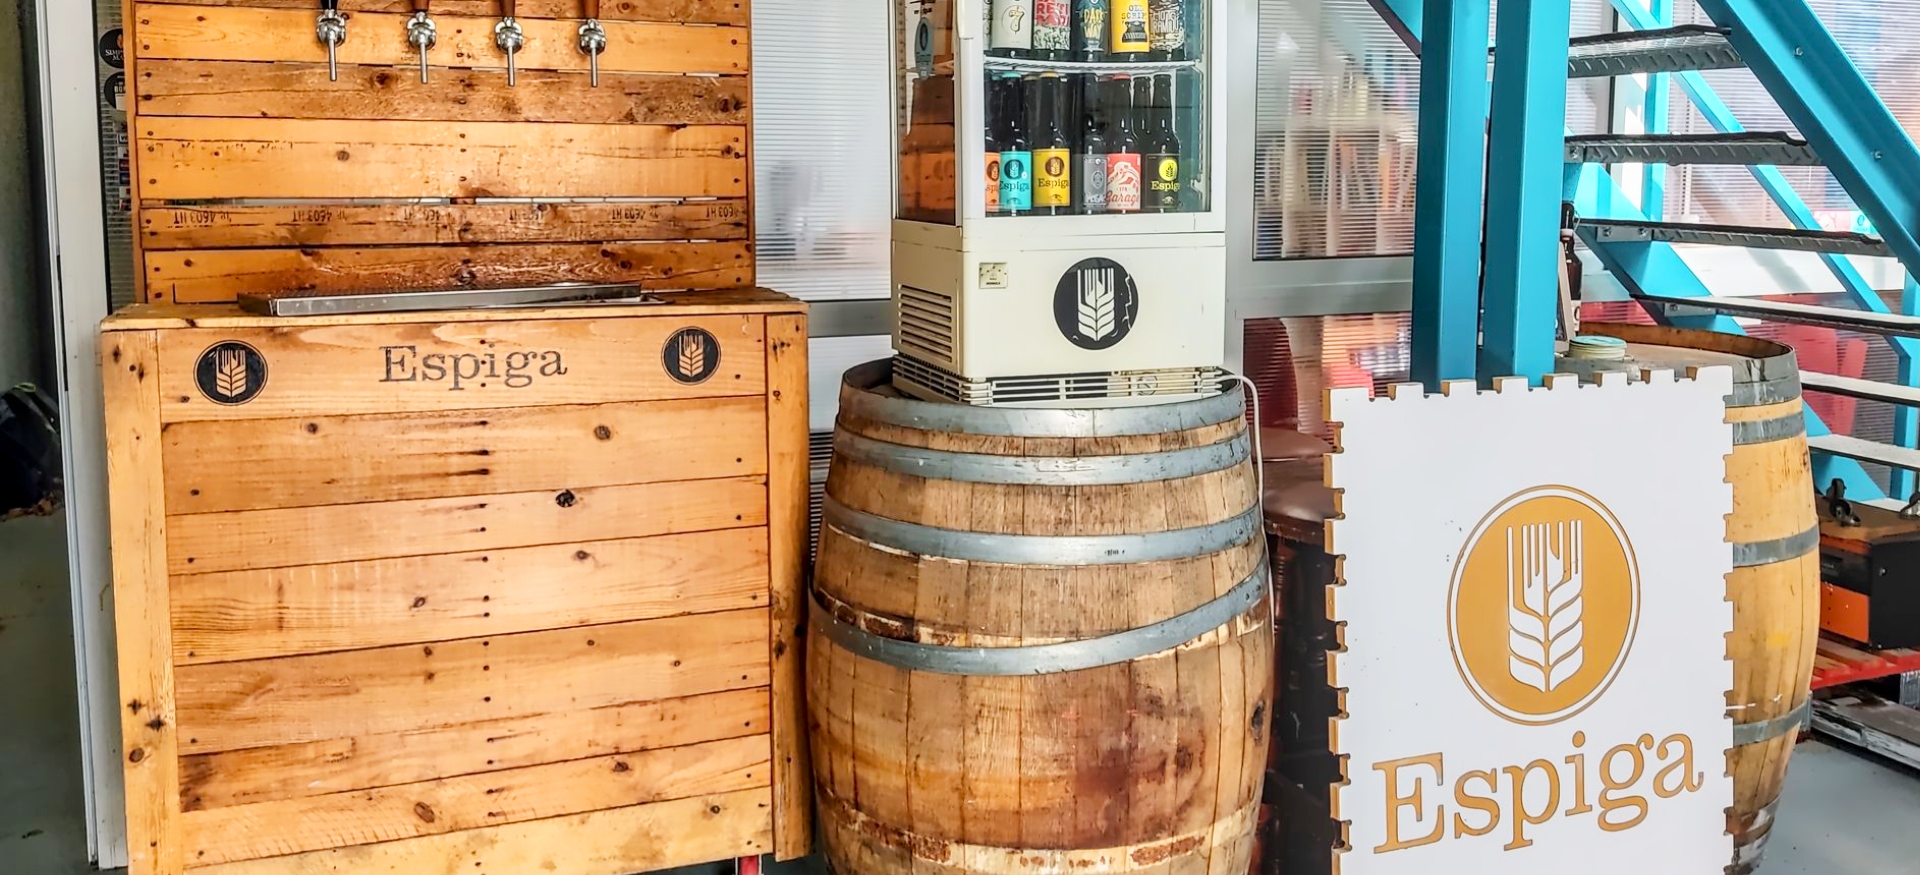 Craft beer in Barcelona: Cervesa Espiga | Craft Beer Nomads